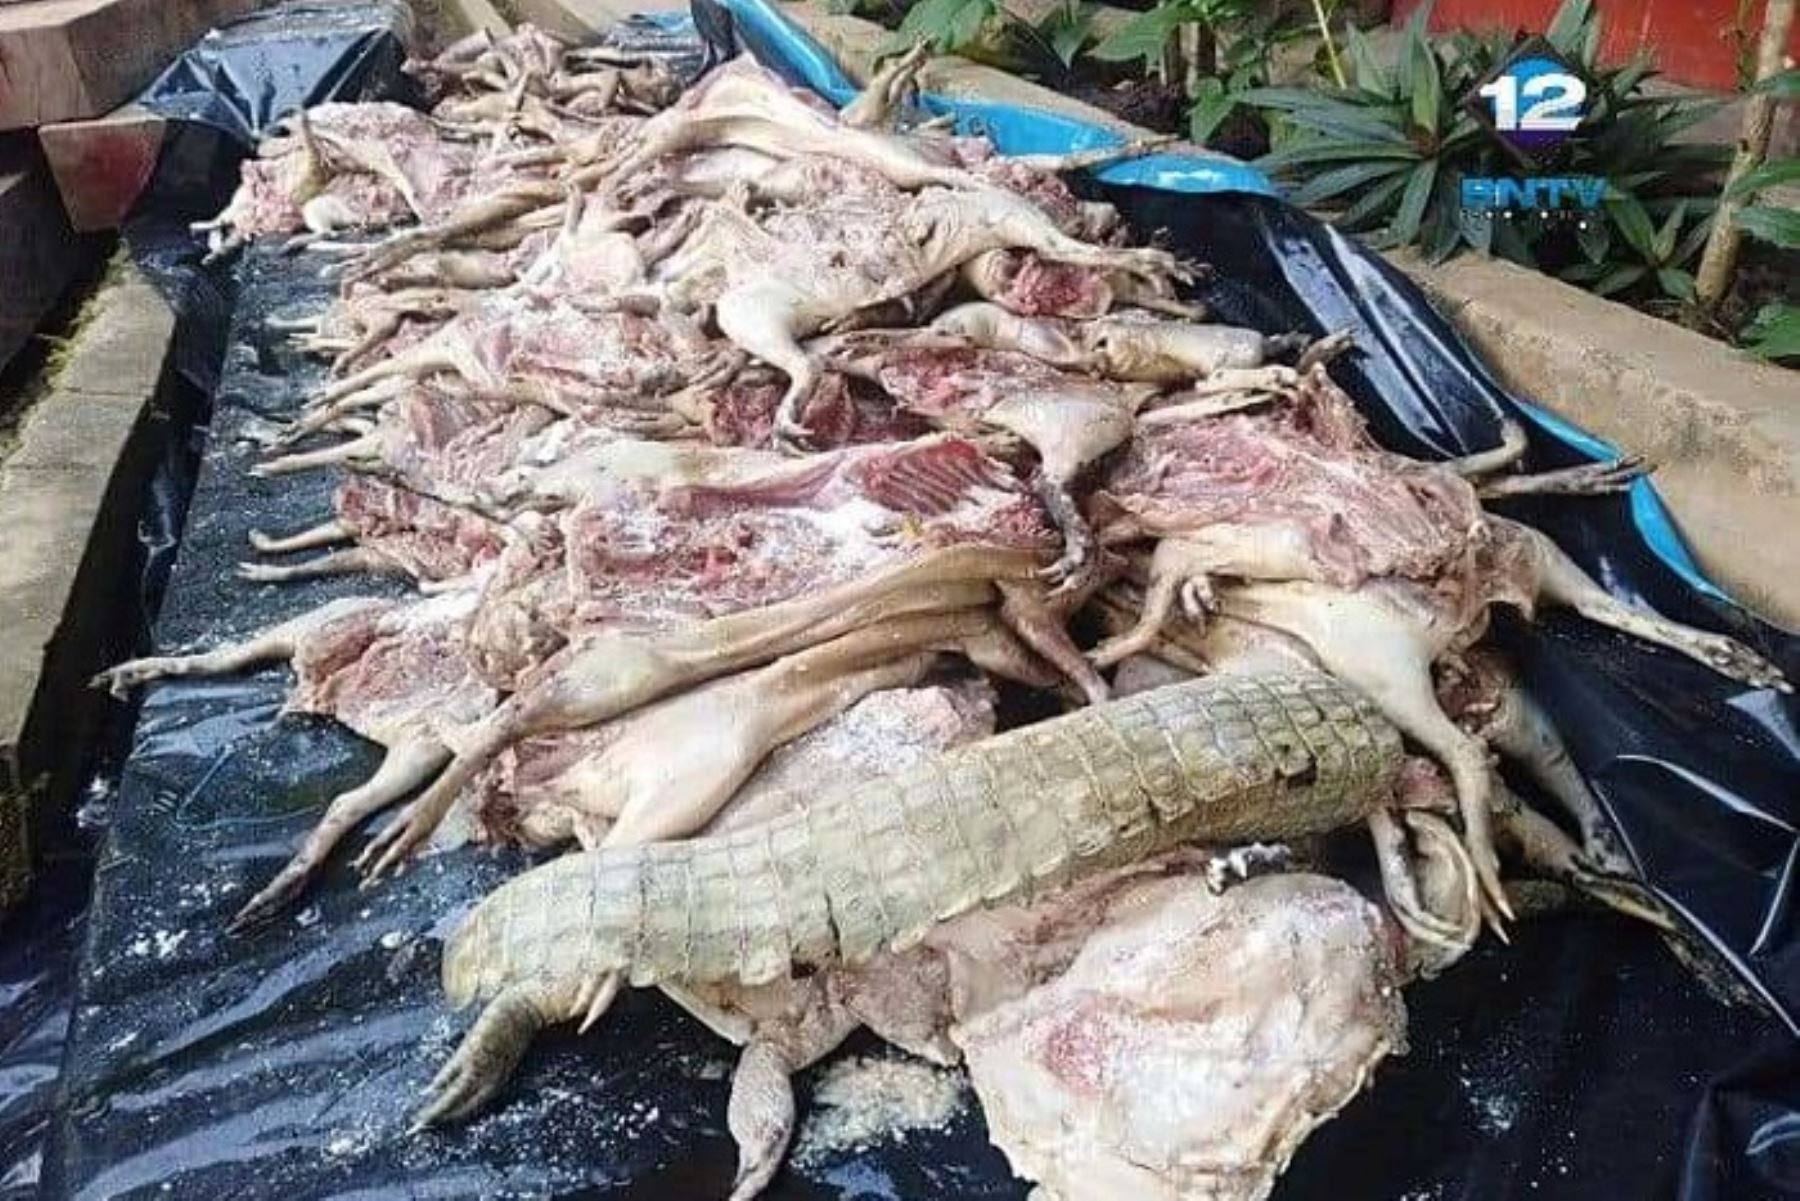 Un promedio de 255 kilos de carne de animales silvestres muertos y listos para su venta en el mercado como carne comestible fue incautado por la fiscal de turno, Vanesa Vela Del Águila, con el apoyo de efectivos policiales y funcionarios de la oficina desconcentrada de Desarrollo Fforestal de Yurimaguas en la región Loreto.